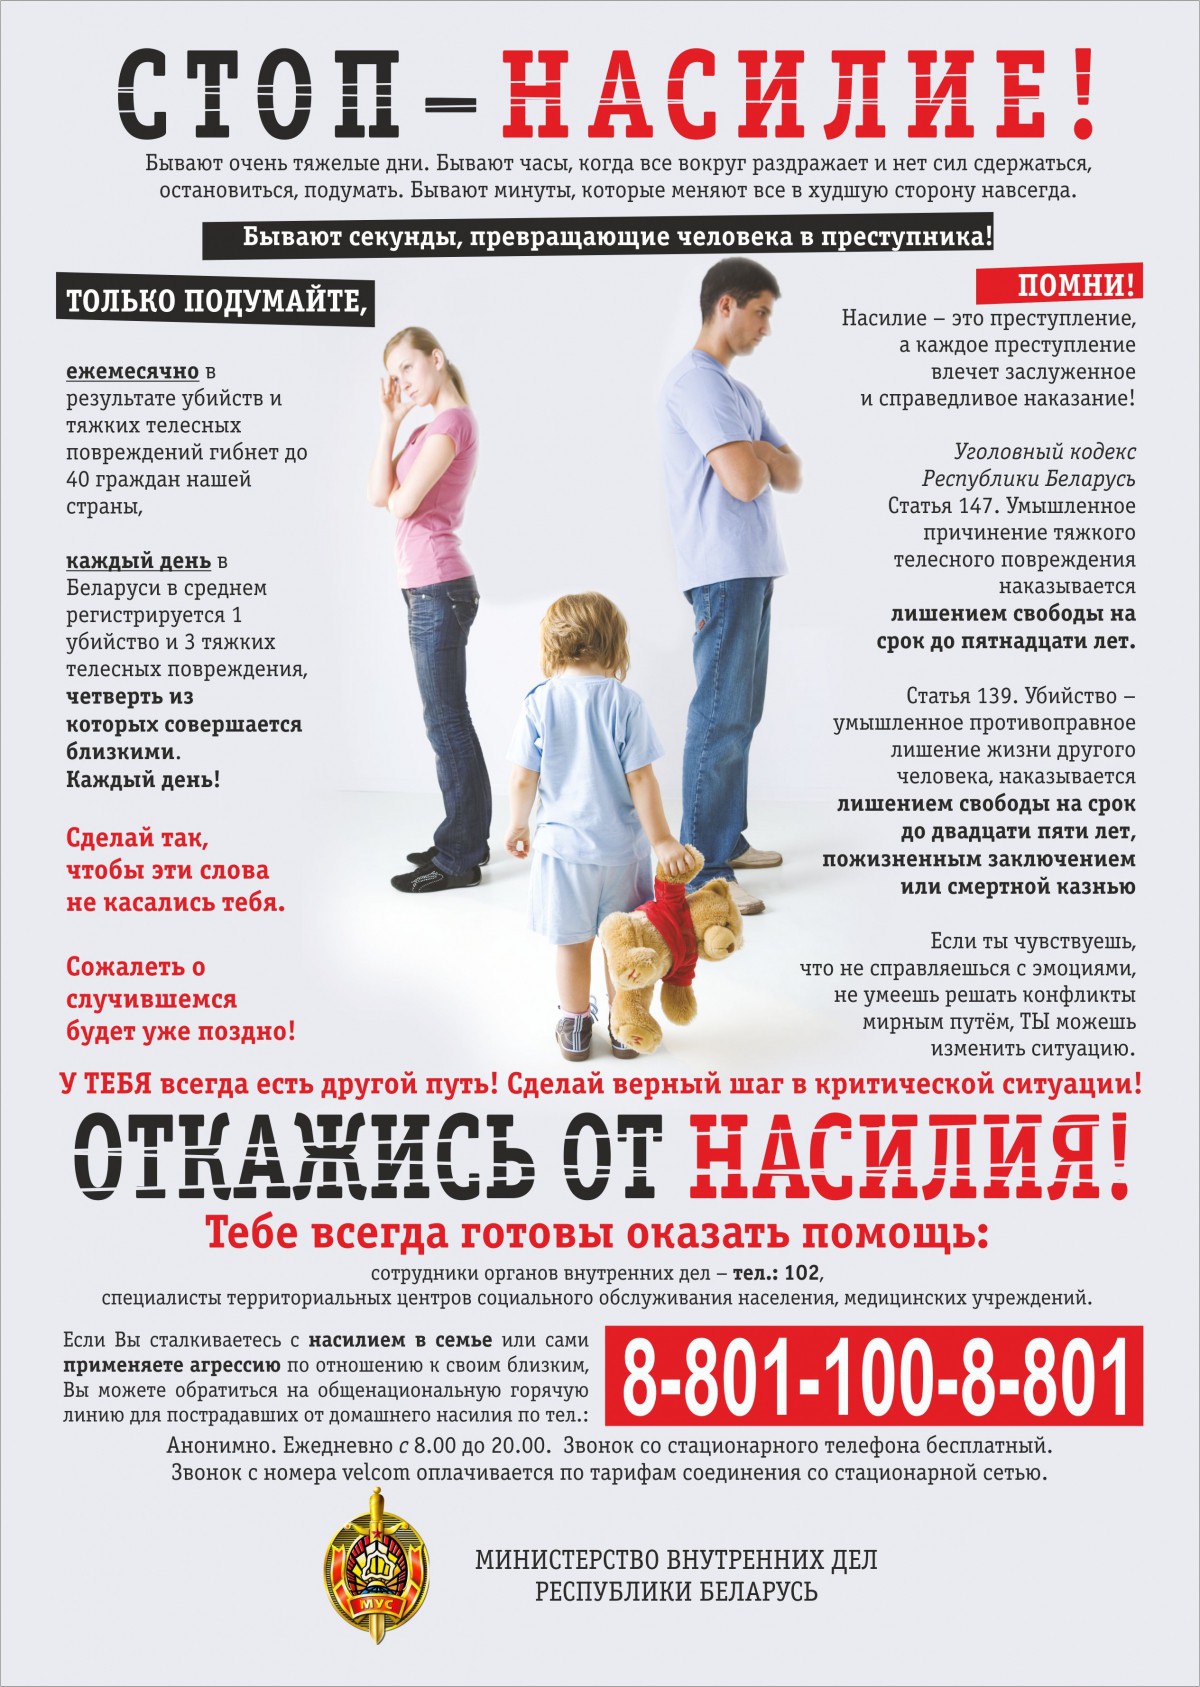 С 28 сентября по 04 октября 2015 года на территории города Бобруйска будут проведены профилактические мероприятия по предупреждению правонарушений совершаемых в сфере семейно-бытовых отношений.